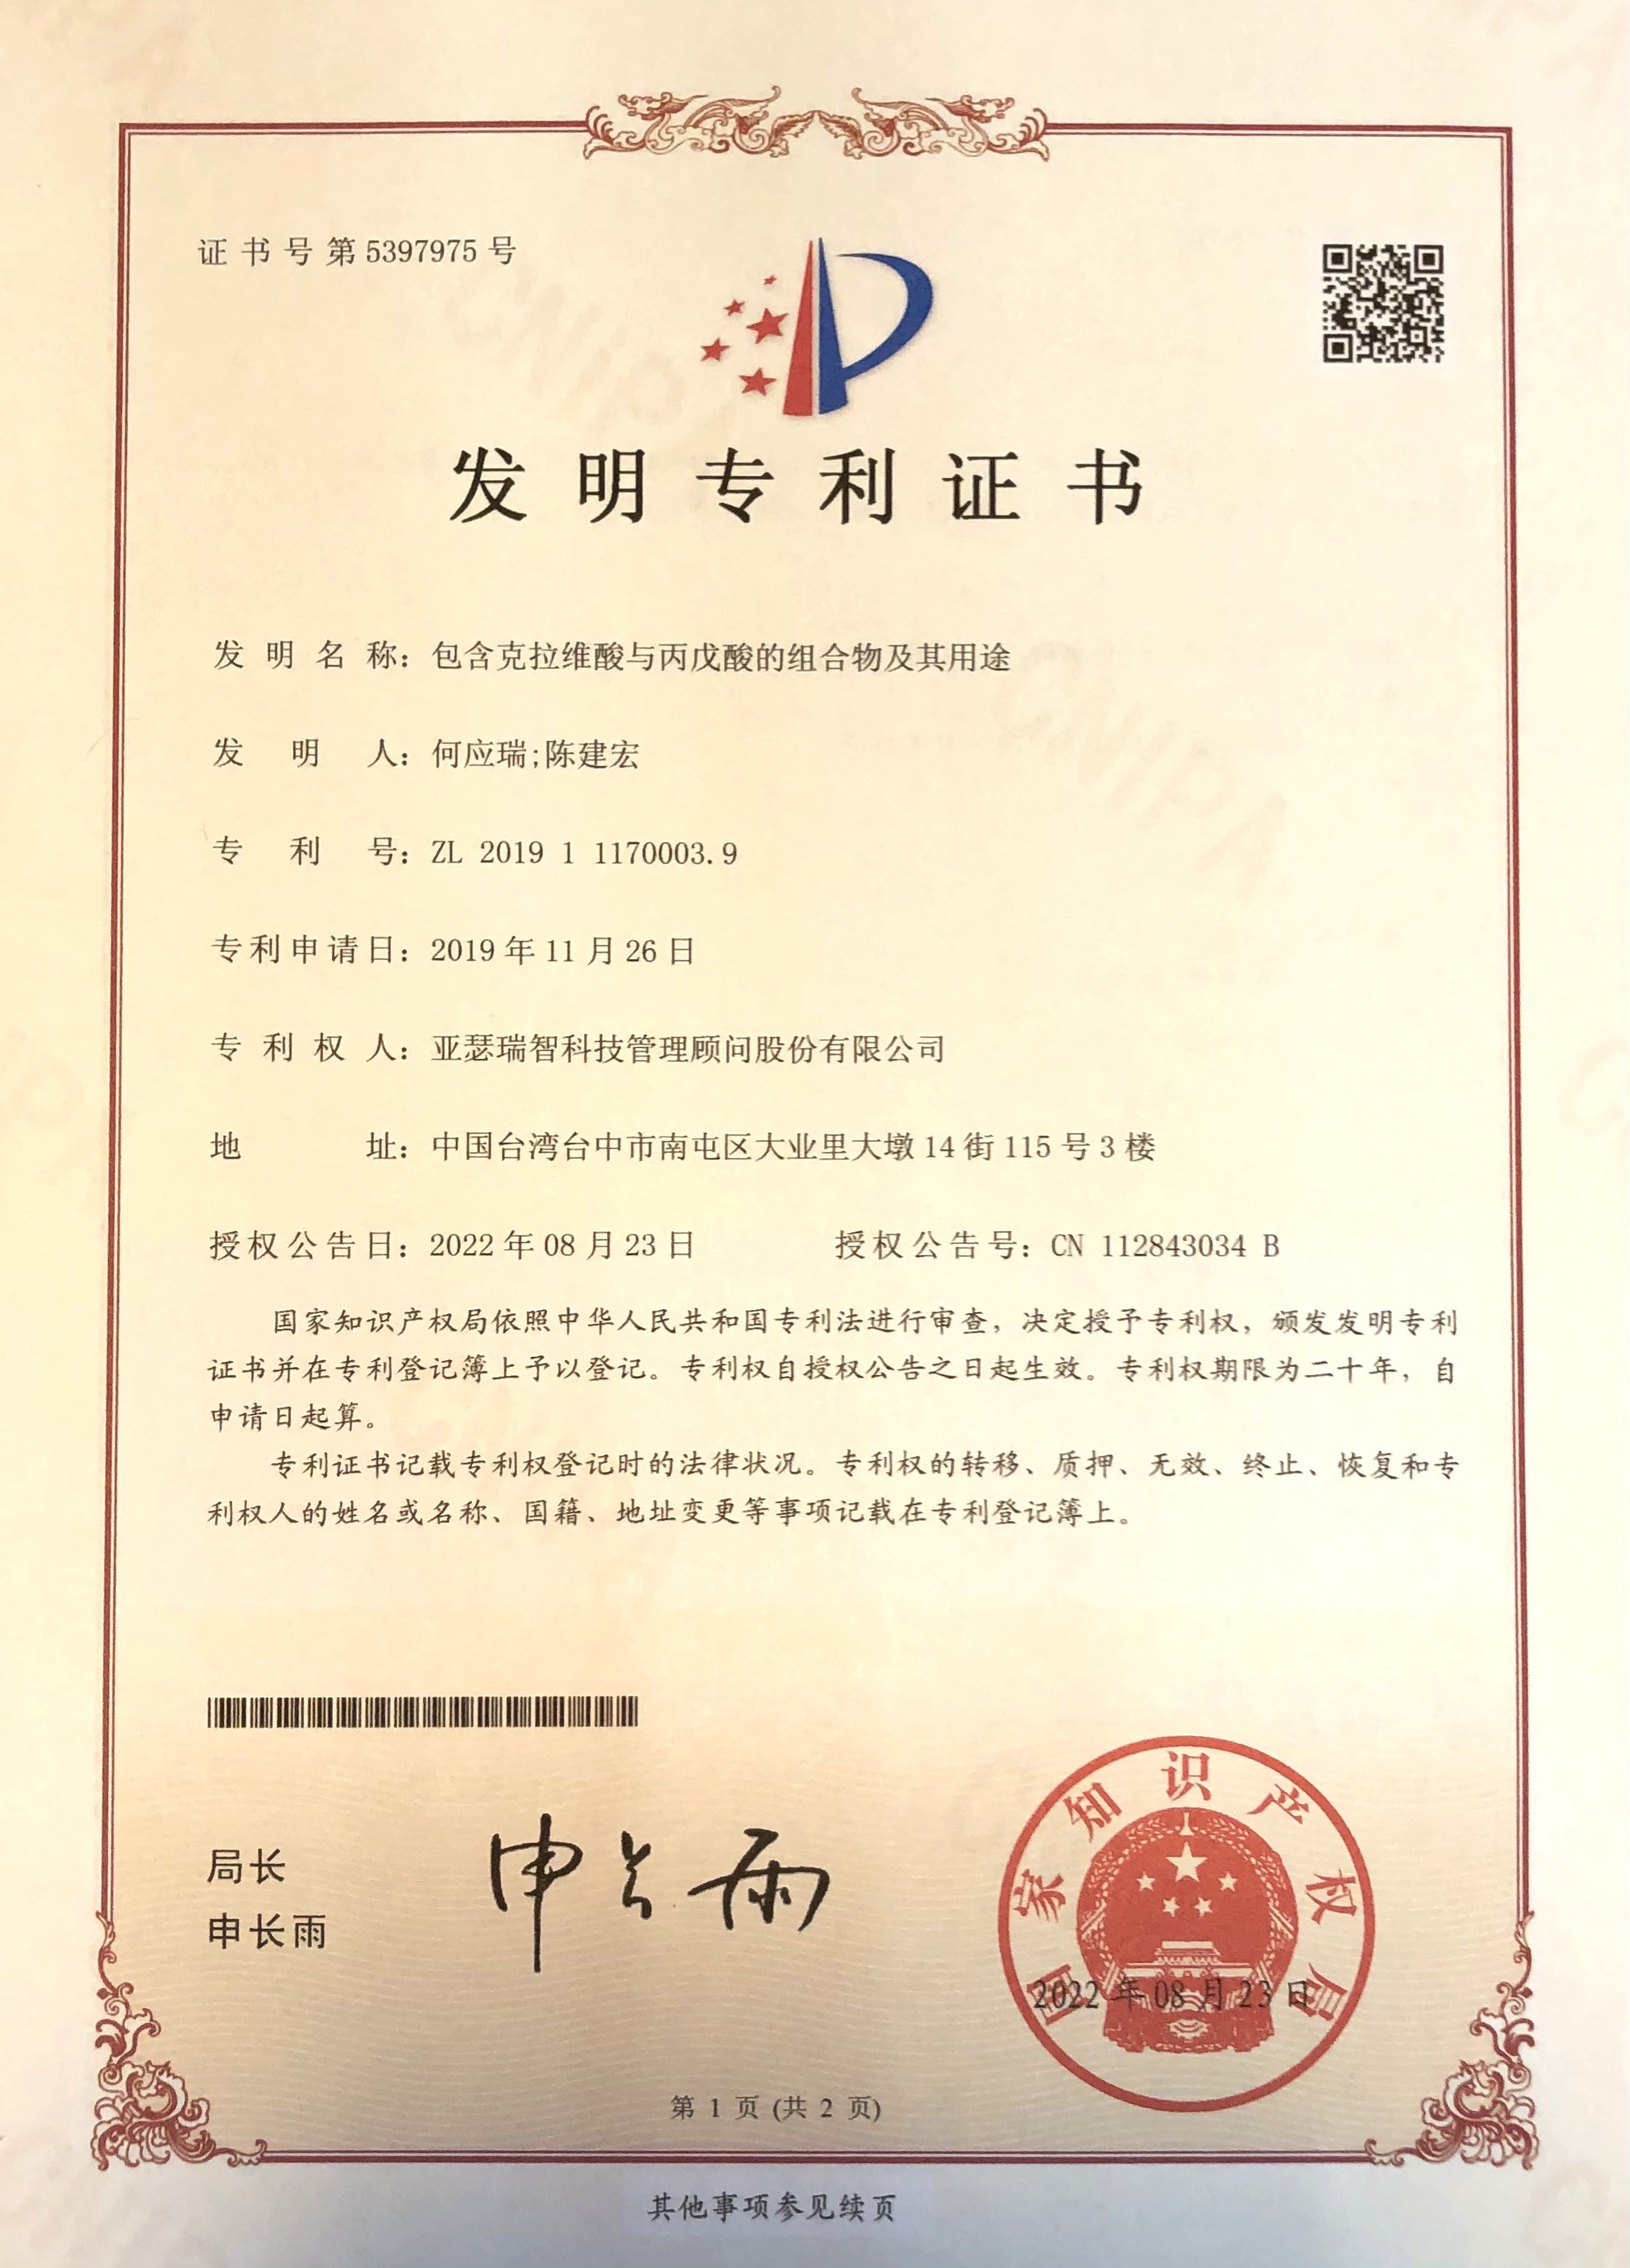 專利證書 中國 Ca Vpa癲癇 專利號 Zl2019111700039